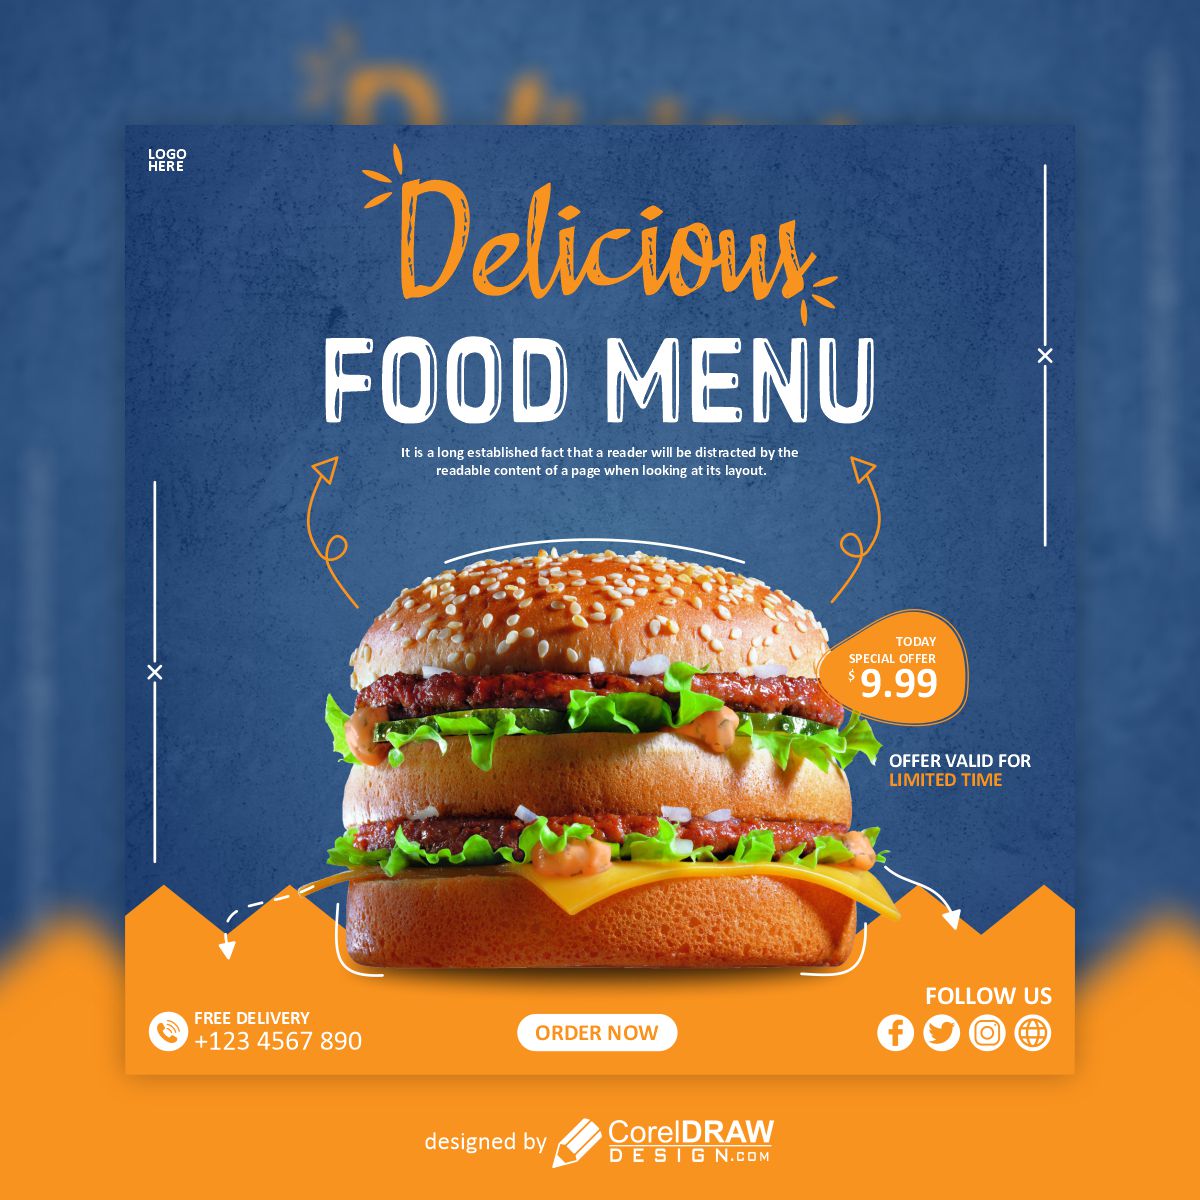 Delicious Food Menu poster design vector free